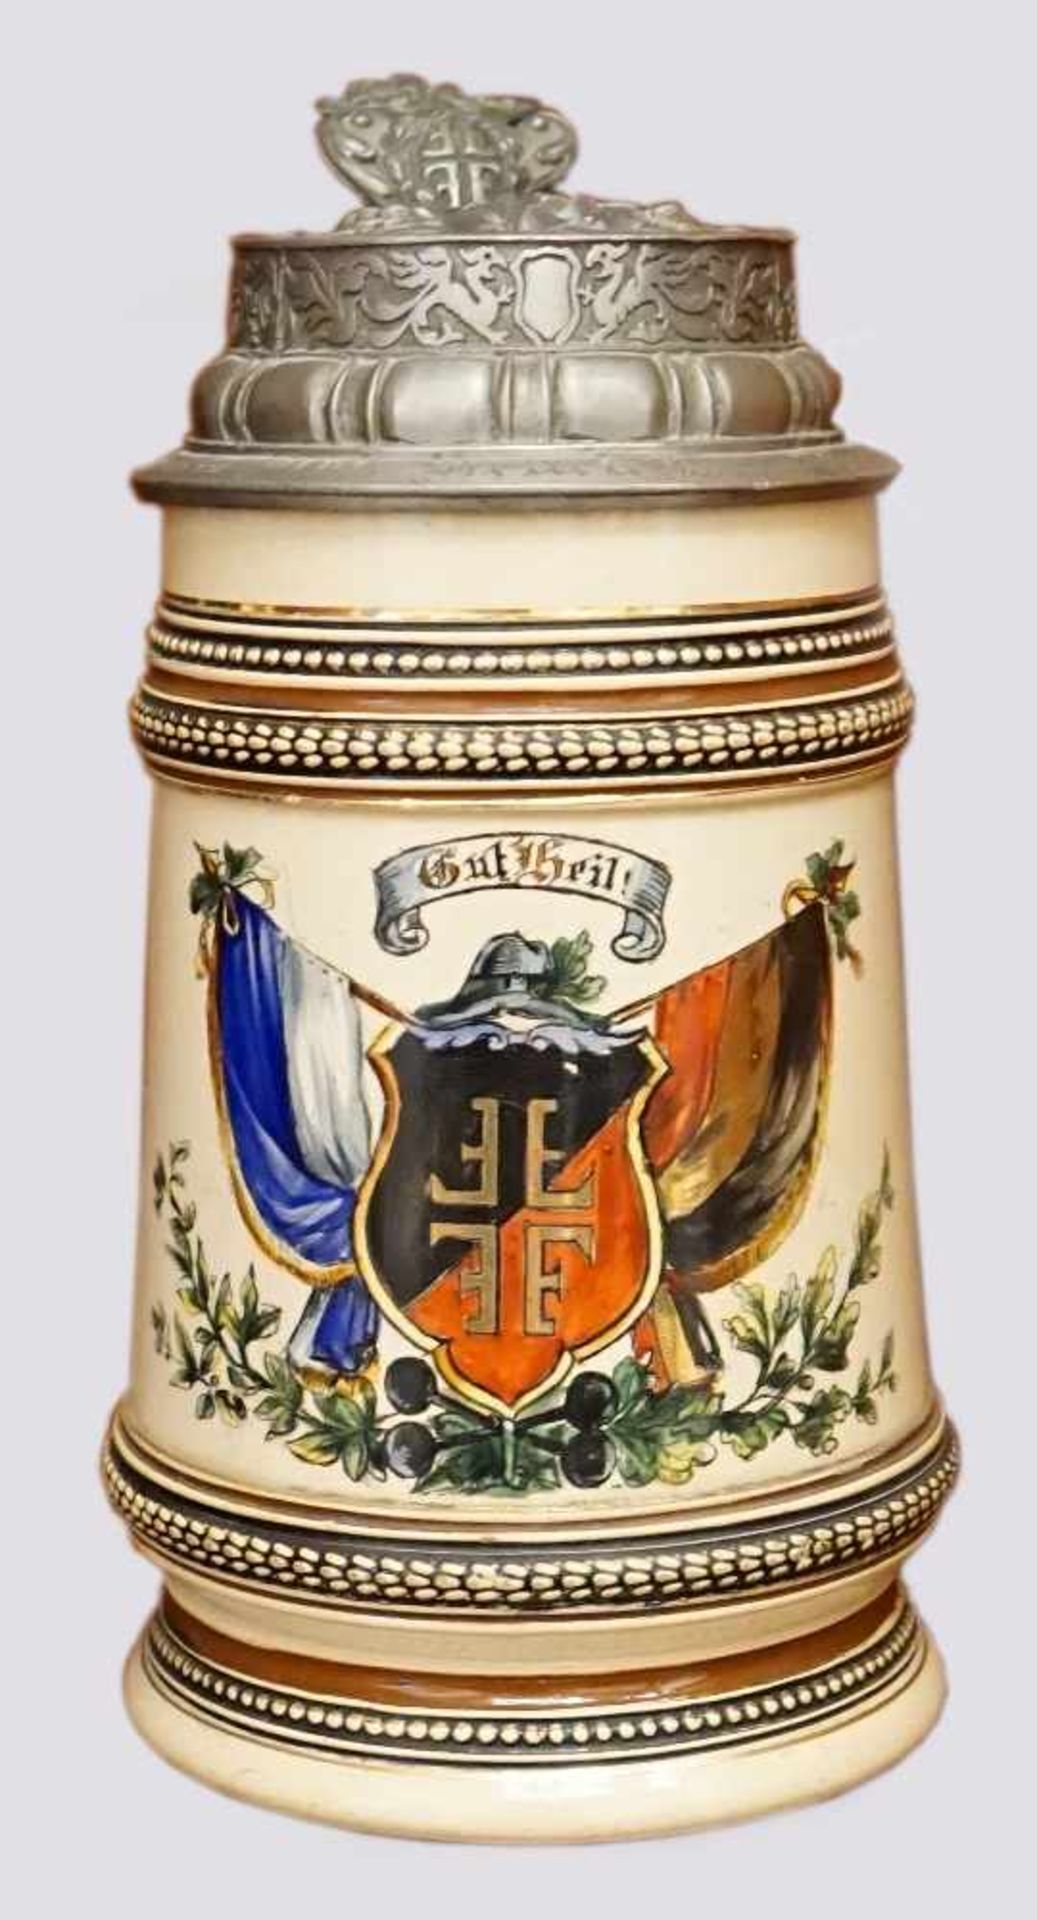 Bierkrug mit Zinndeckel "Gut Heil"mit Turnerkreuz im Wappen dat. 24./6./04 bem. Asp.